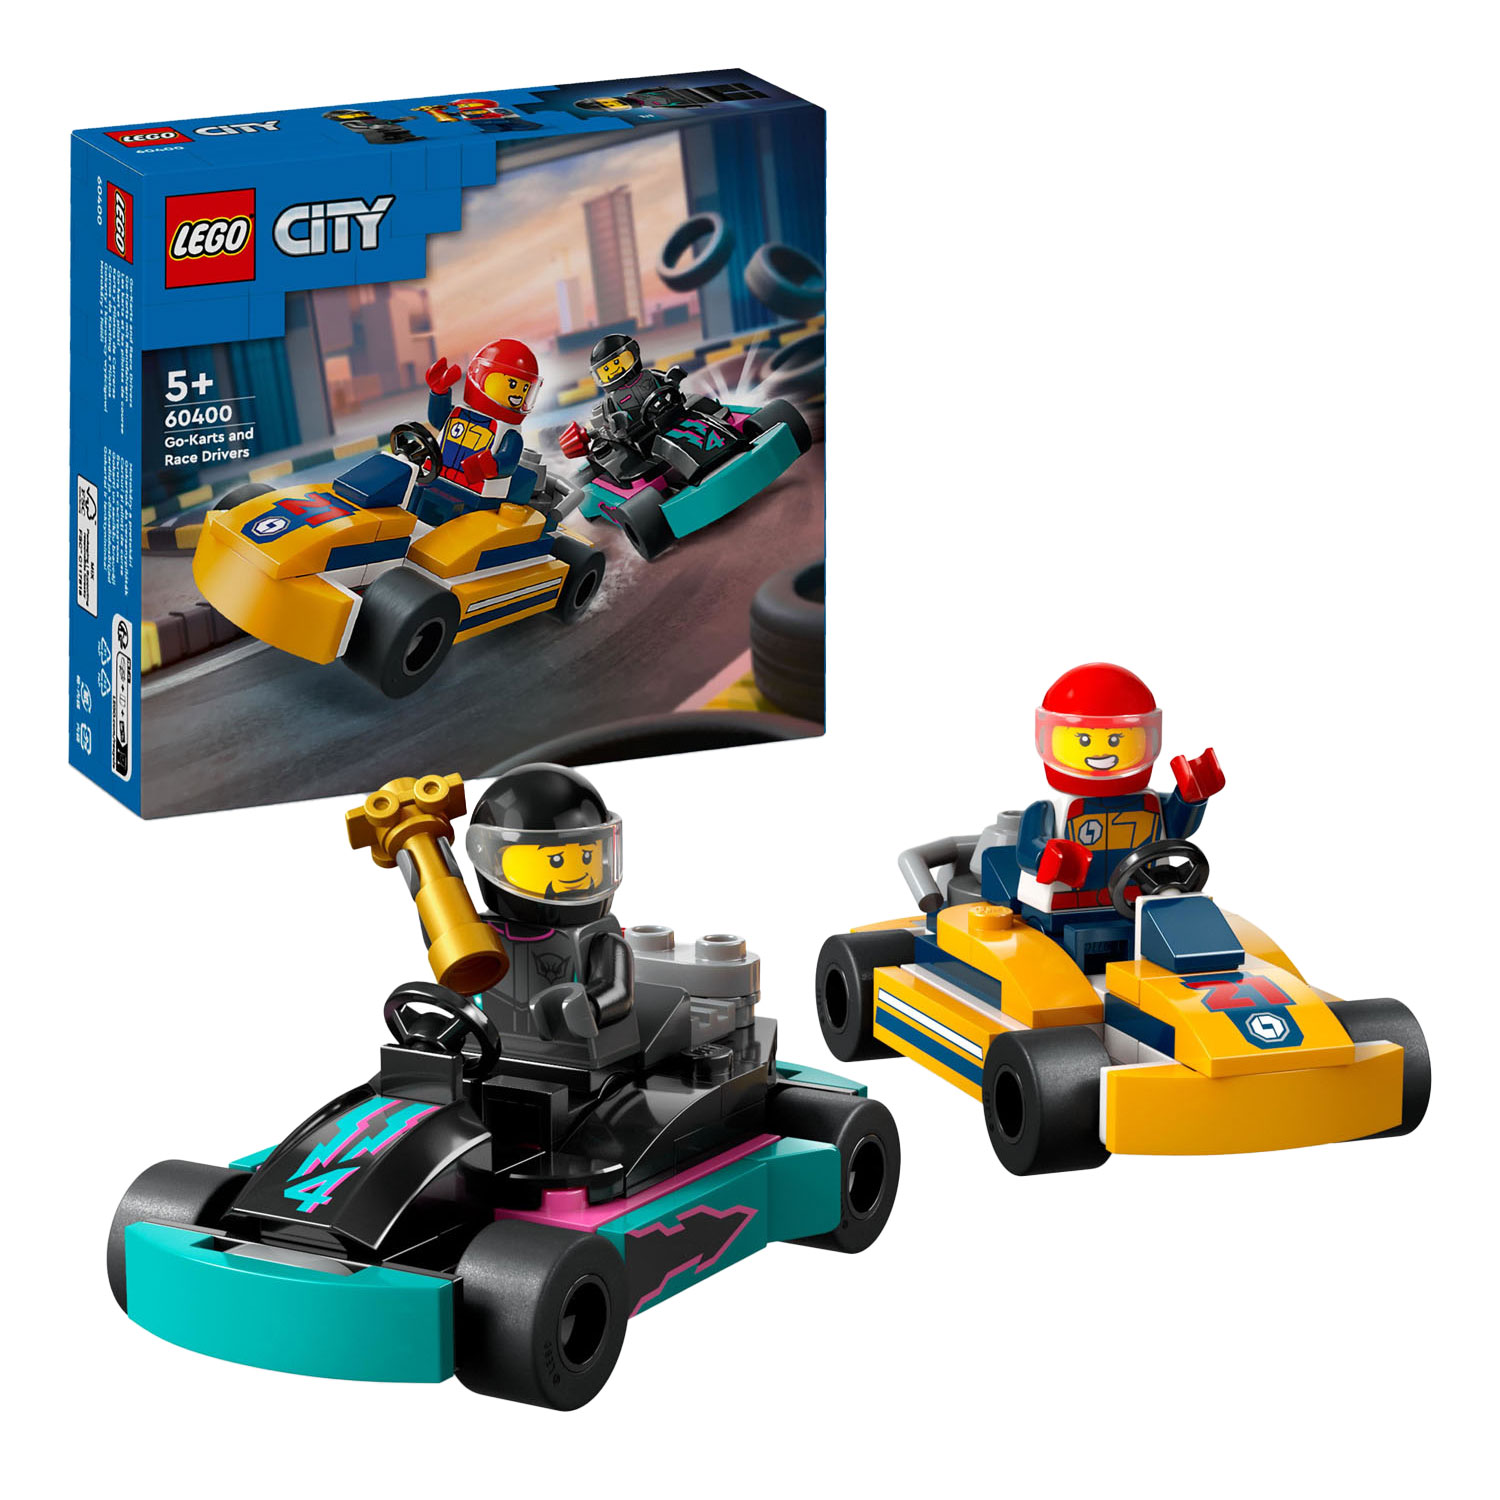 Acheter LEGO City 60400 Karts et coureurs en ligne?